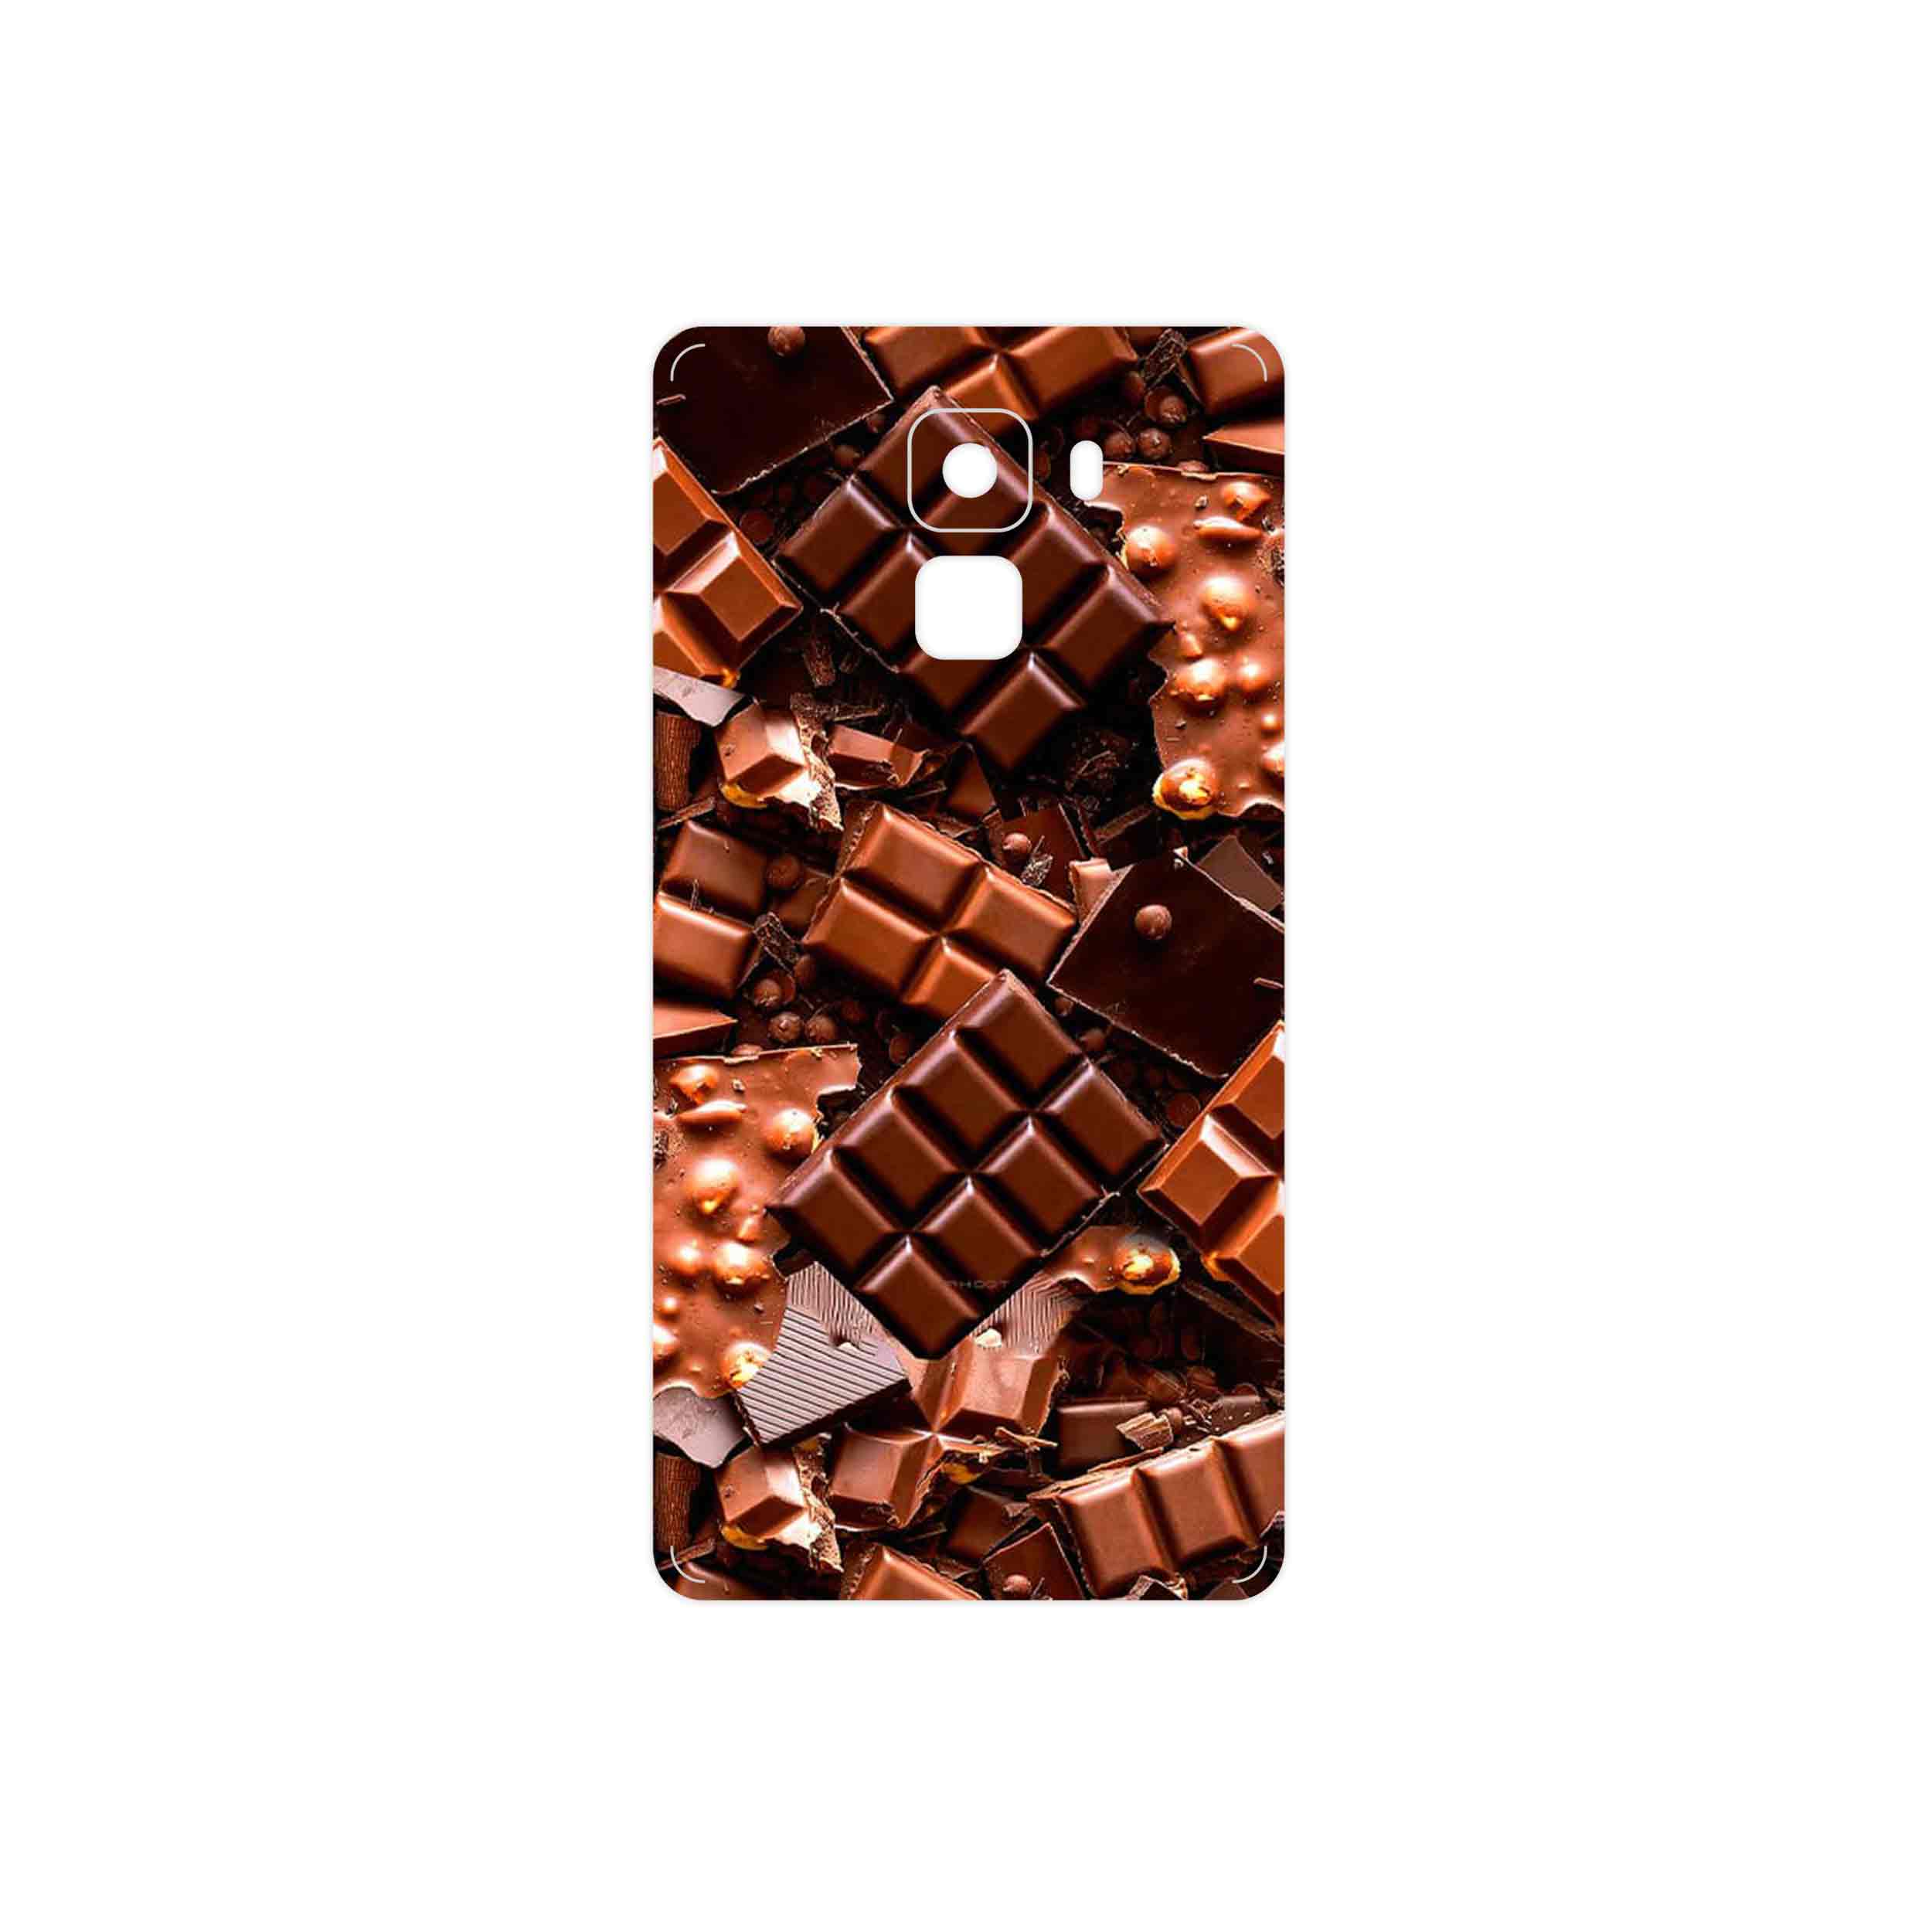 برچسب پوششی ماهوت مدل Chocolate مناسب برای گوشی موبایل آنر 7